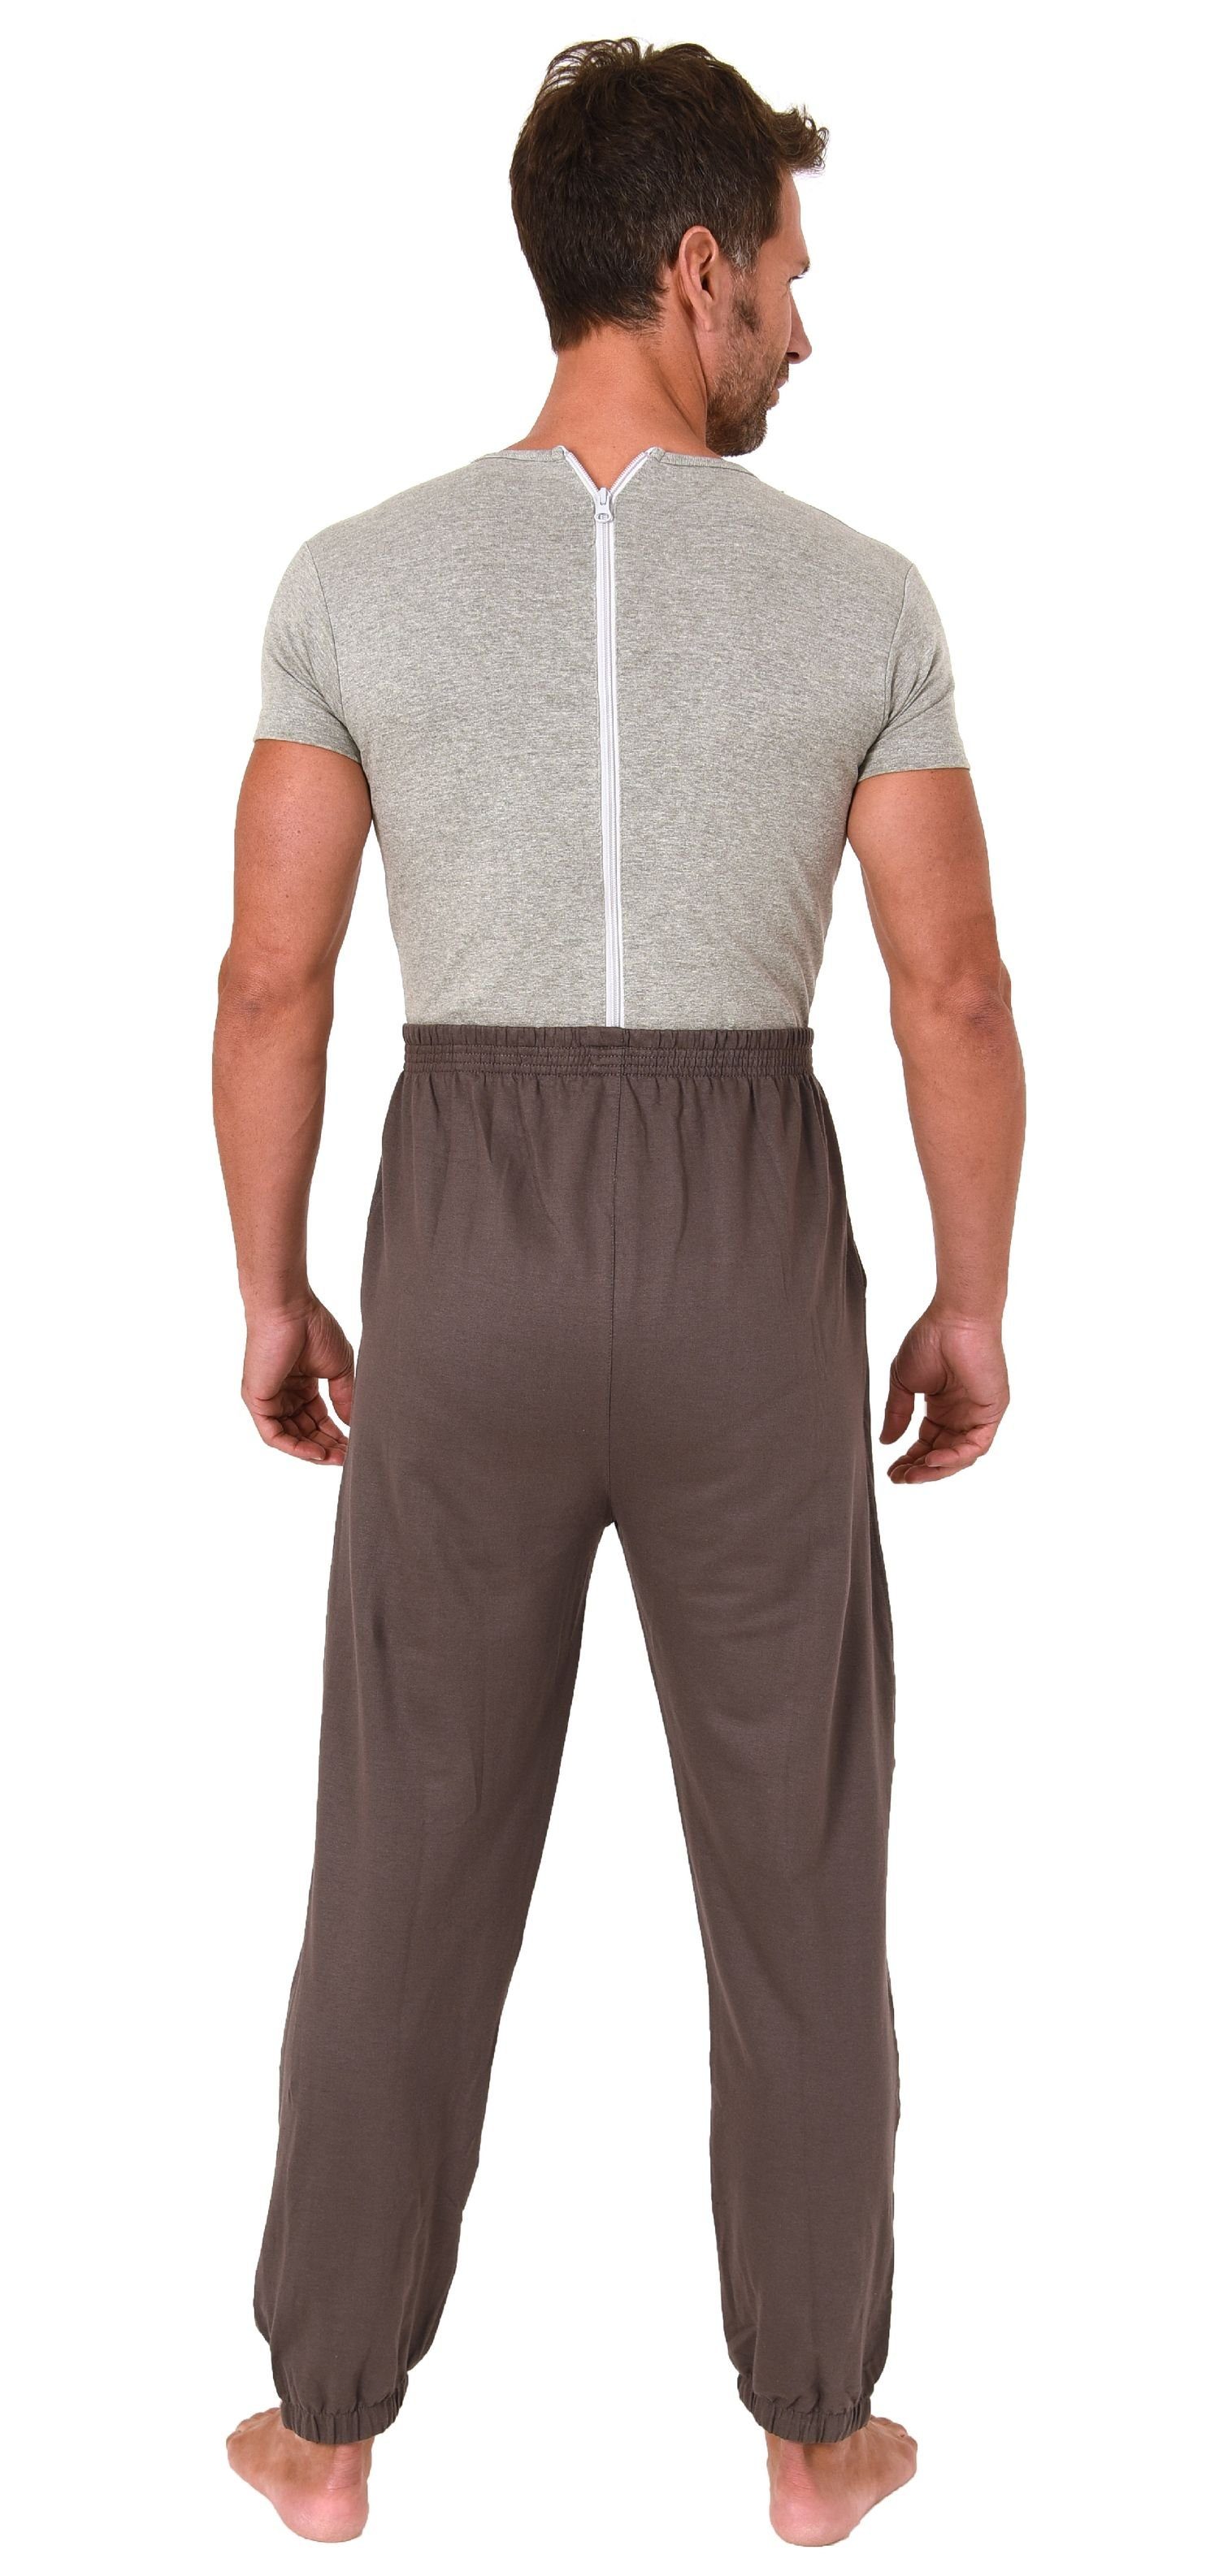 UNISEX Normann mit Pyjama Pflegeoverall im Look Care Jogging Rückenreißverschluss